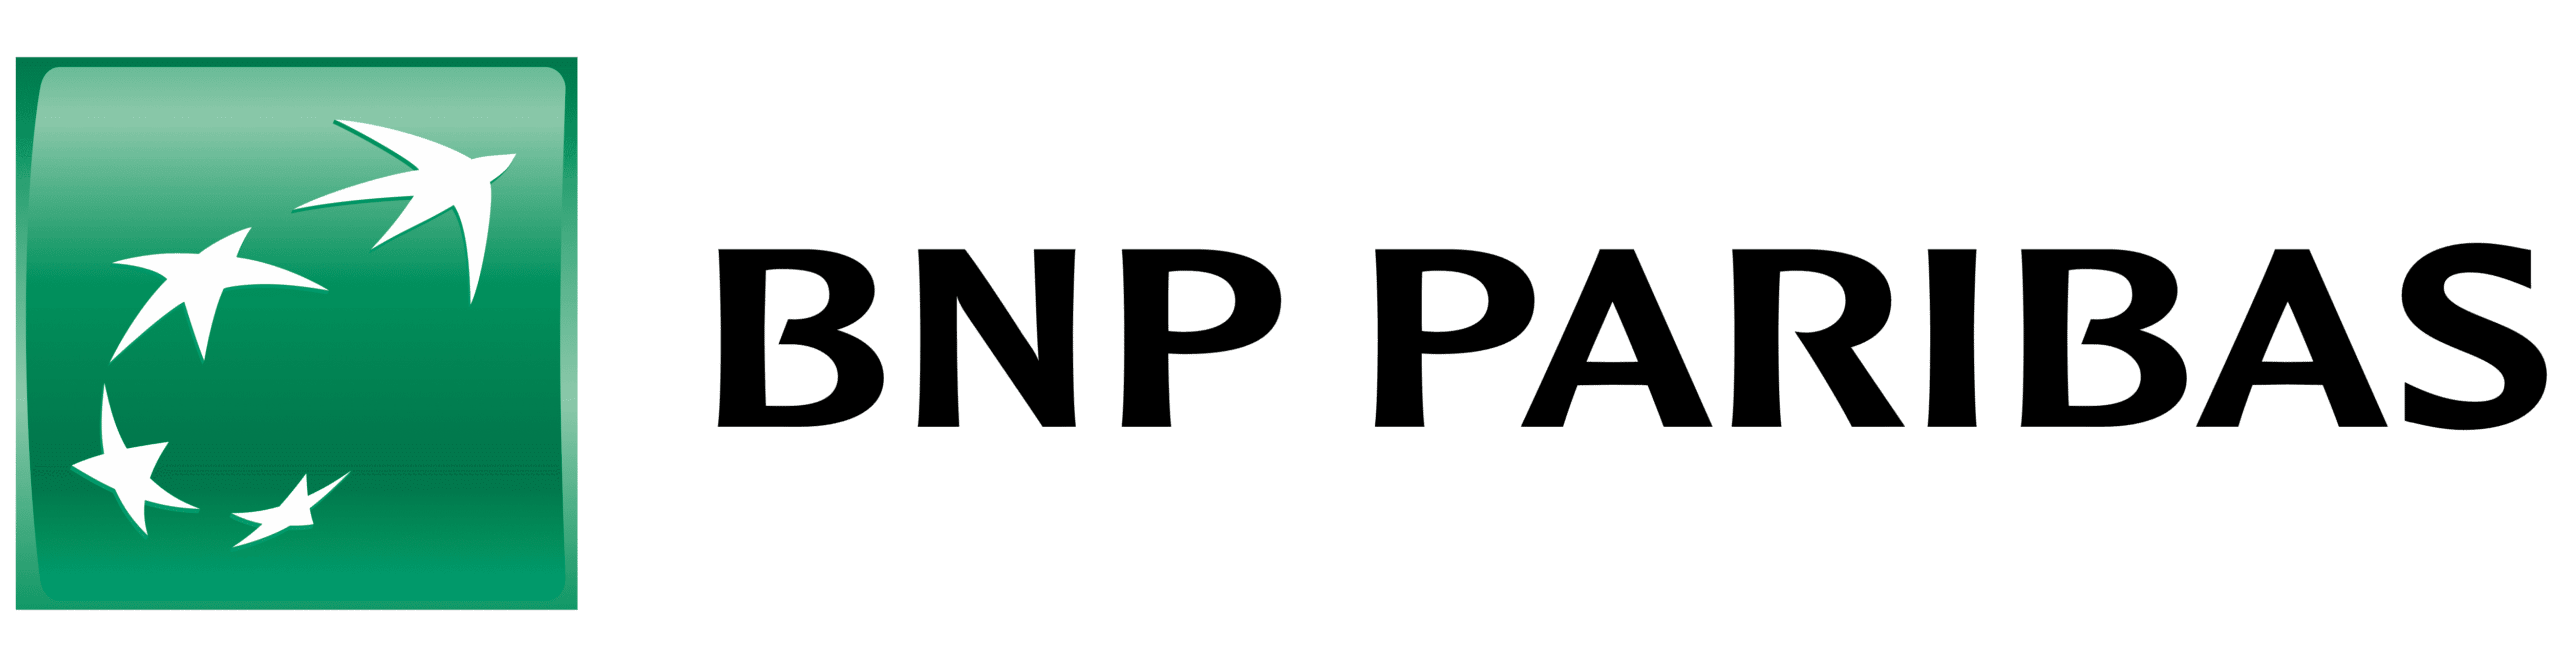 BNP Paribas – Contacter un conseiller